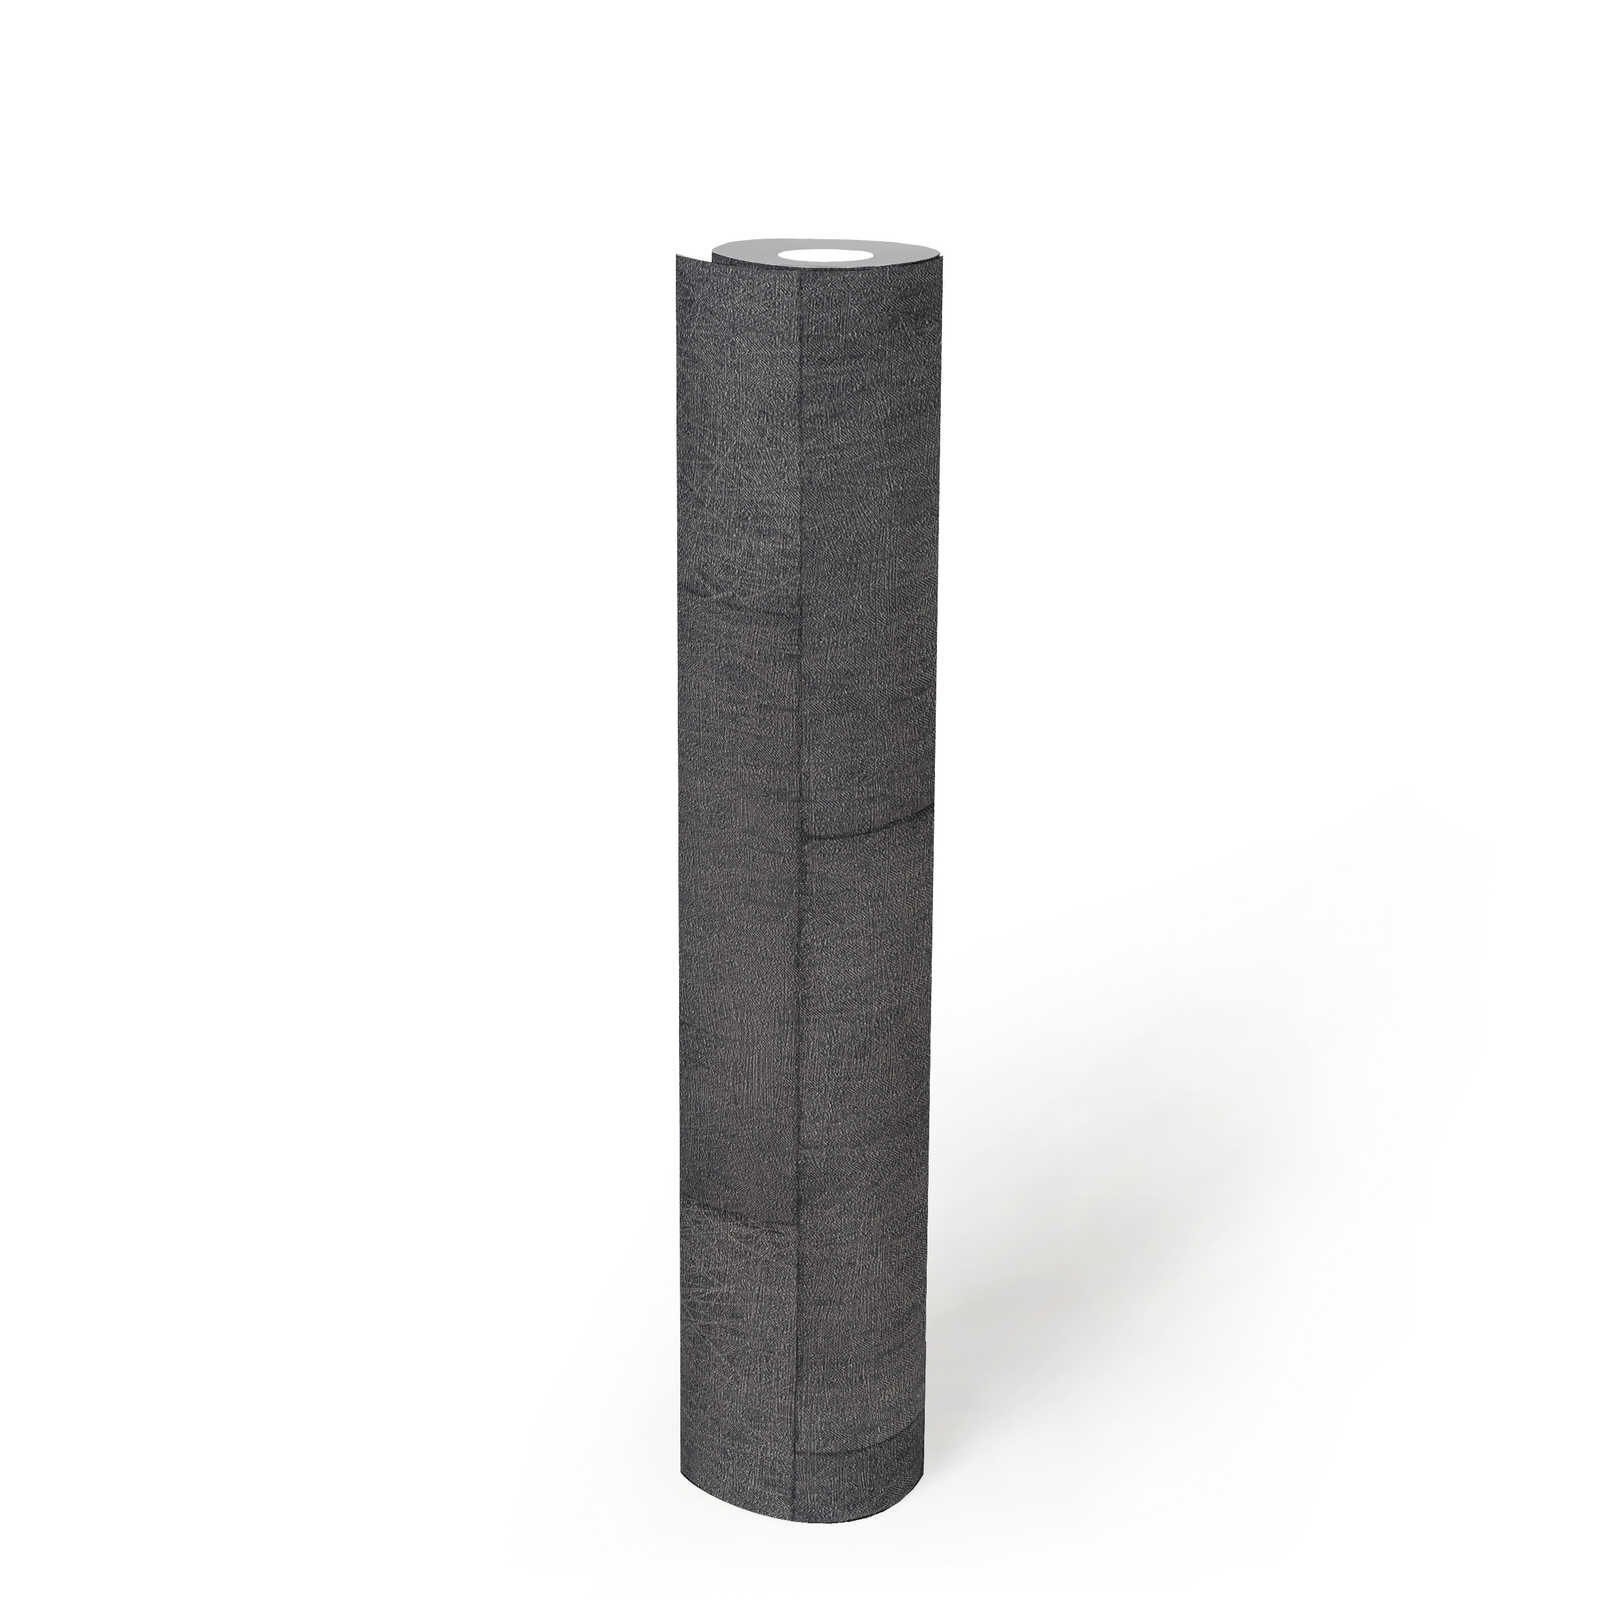             Mauerwerk Tapete mit Struktureffekt, glänzend – Grau, Schwarz
        